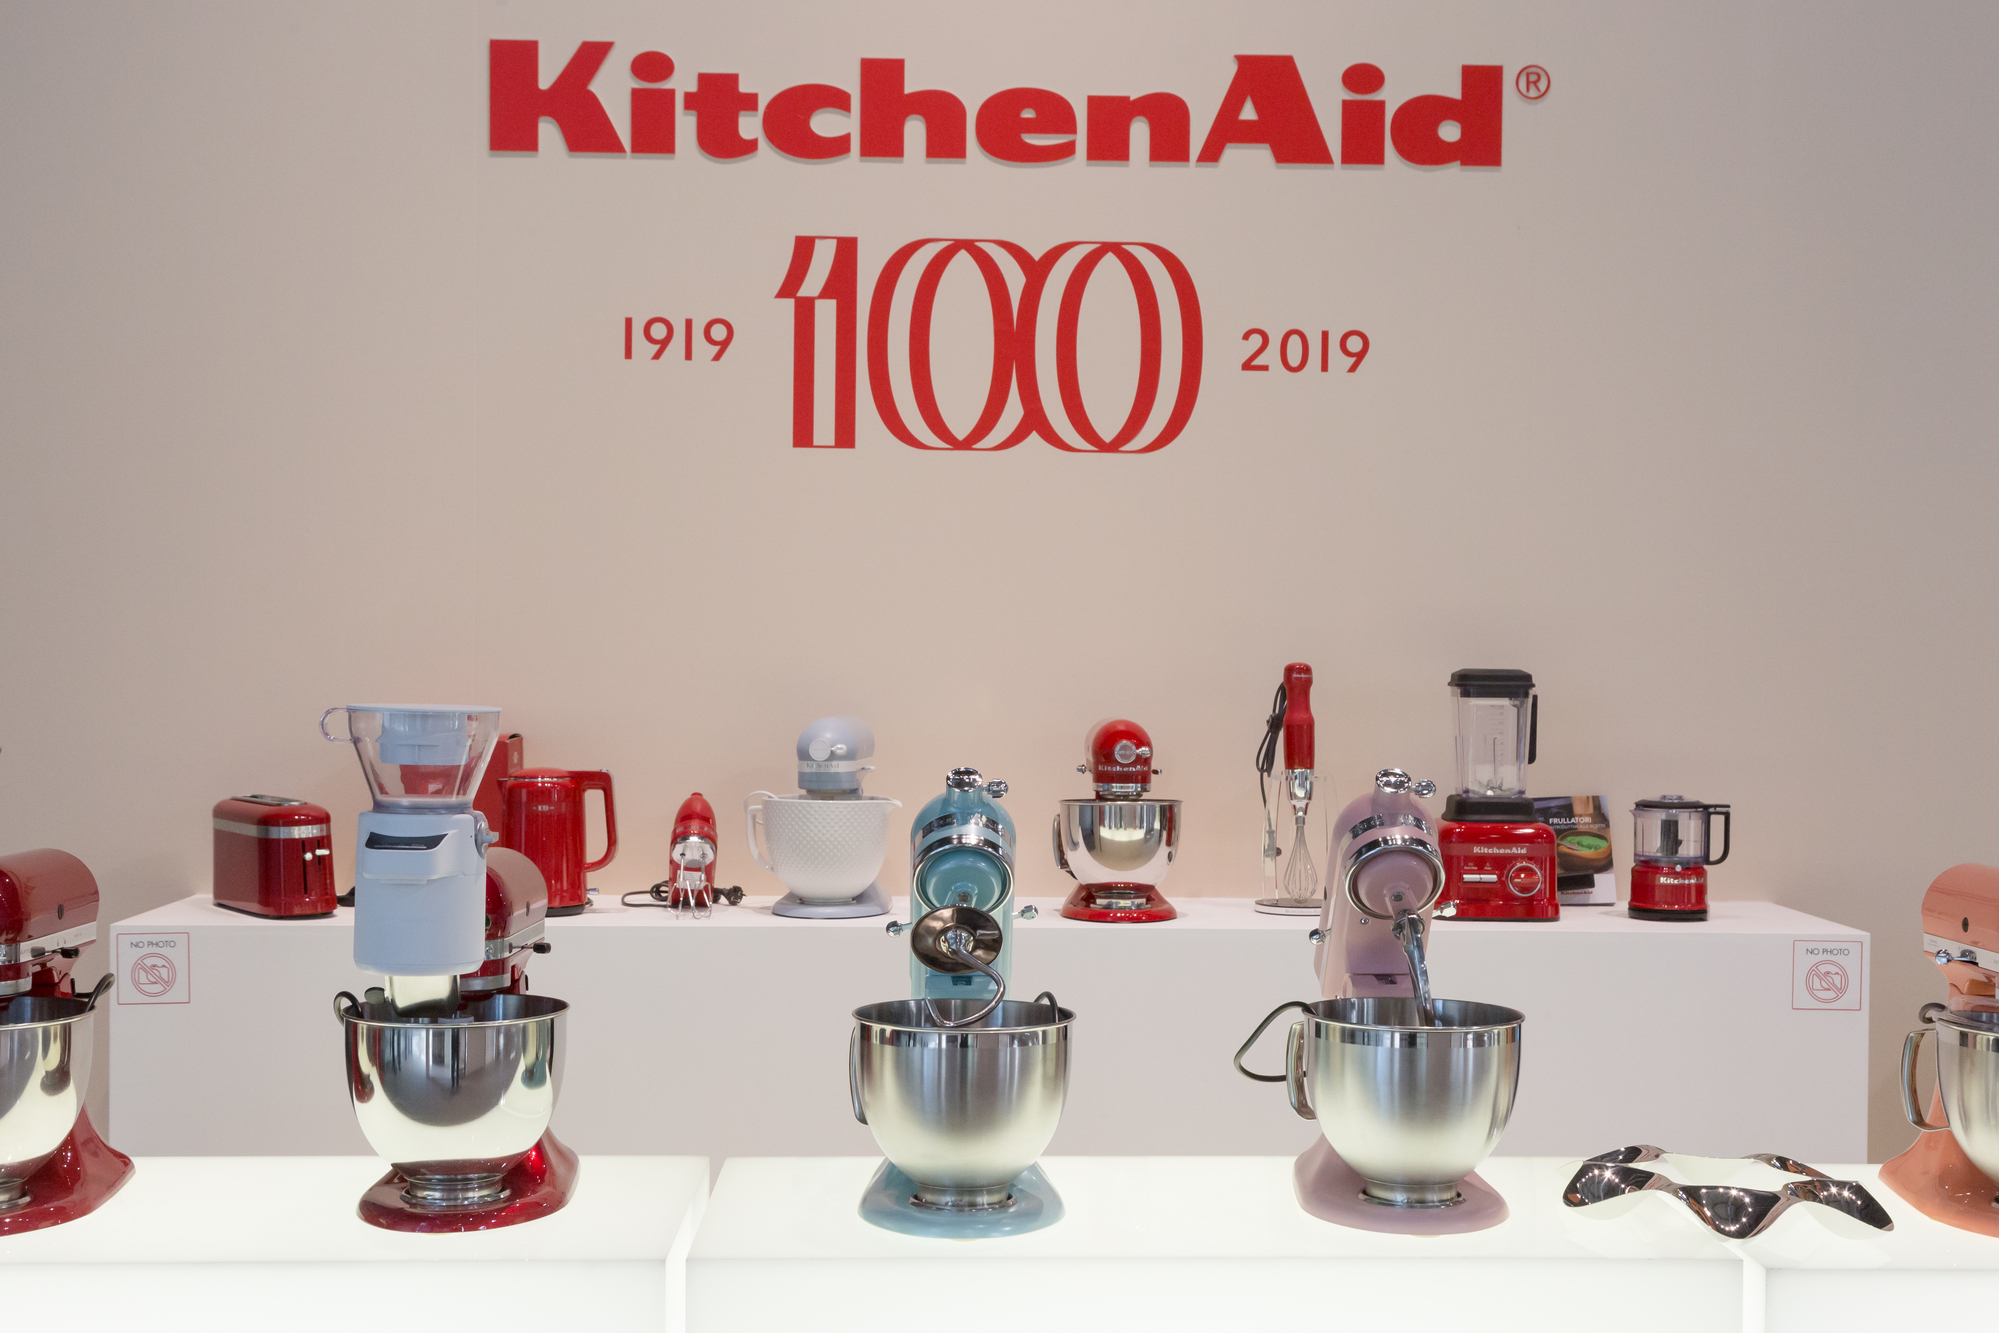 Kitchen Aid machines at HOMI 2019 in Milan, Italy Foto von tinx